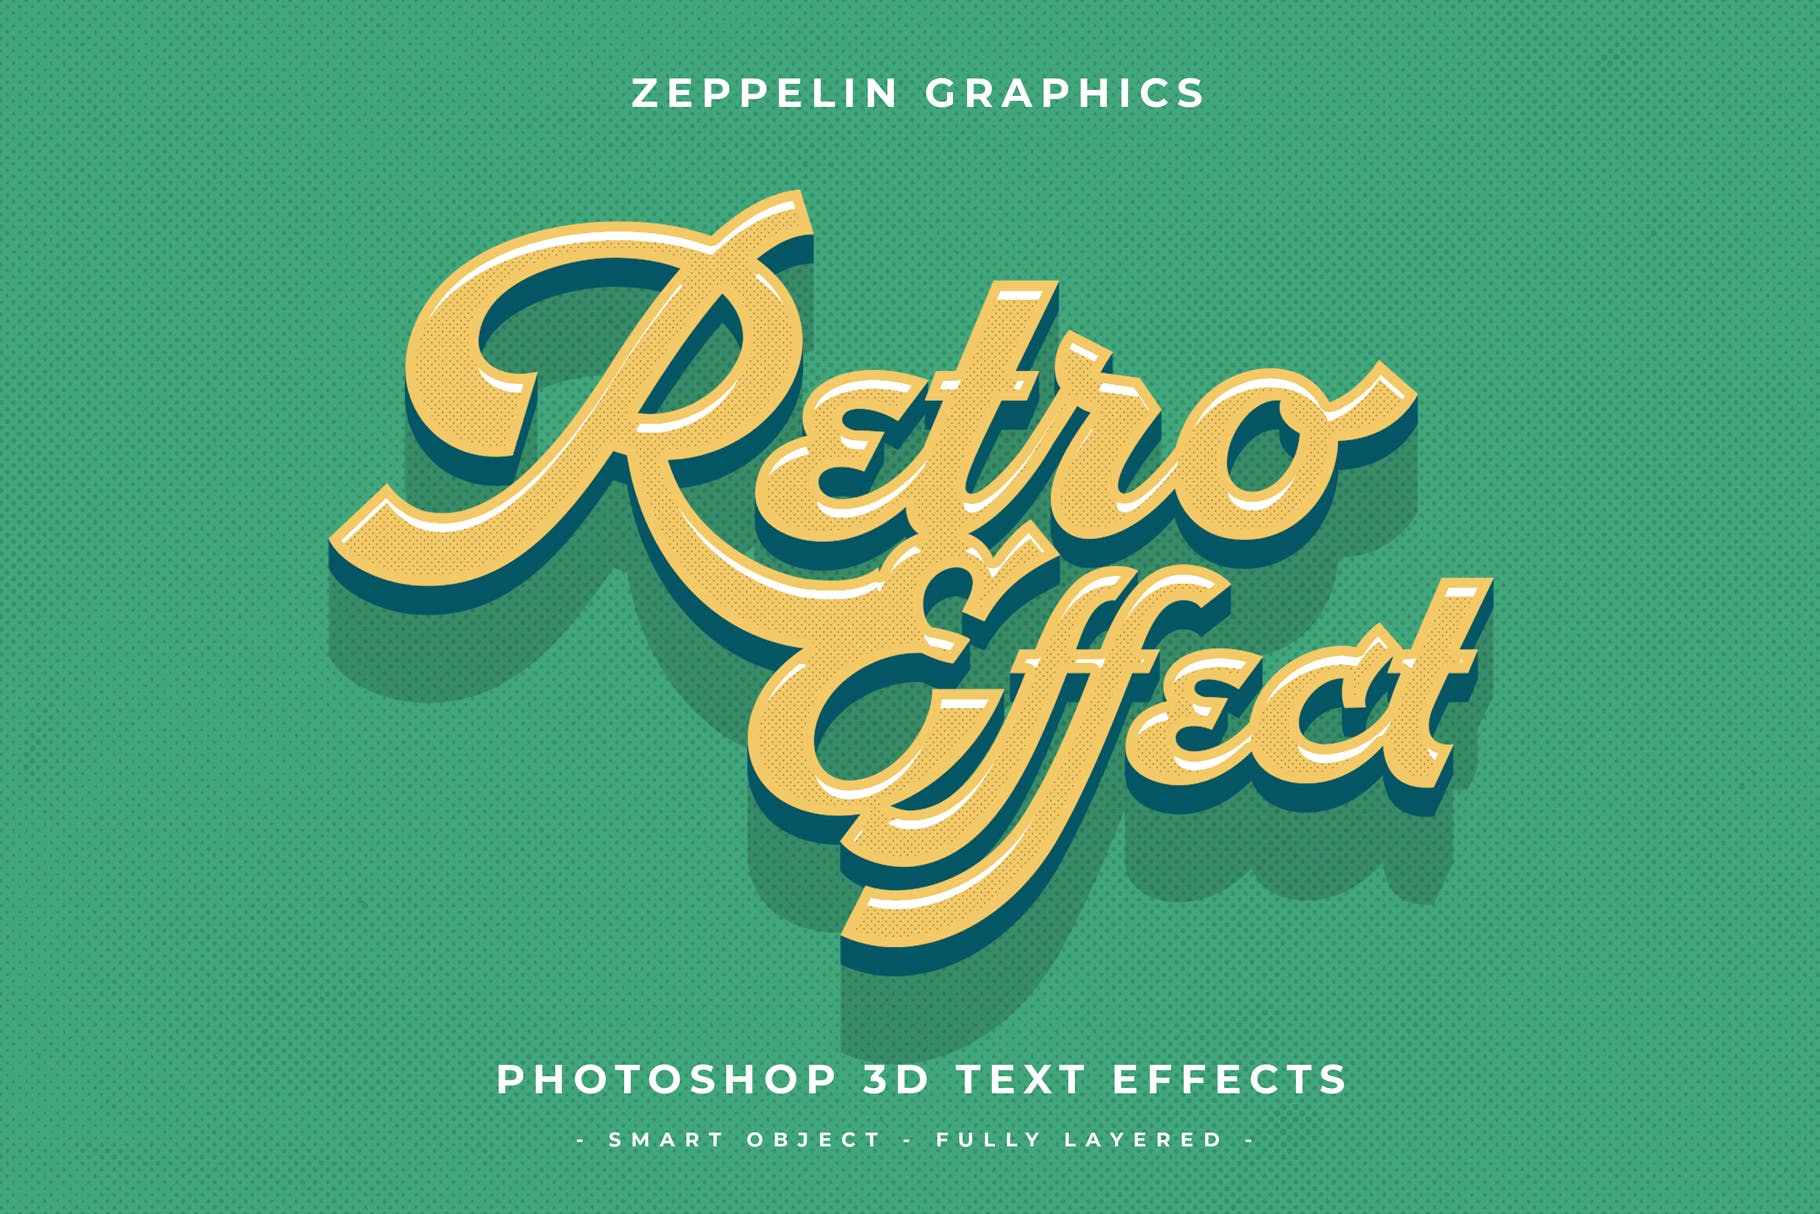 复古设计风格3D立体字体样式PSD分层模板v7 Vintage Text Effects Vol.7插图(5)